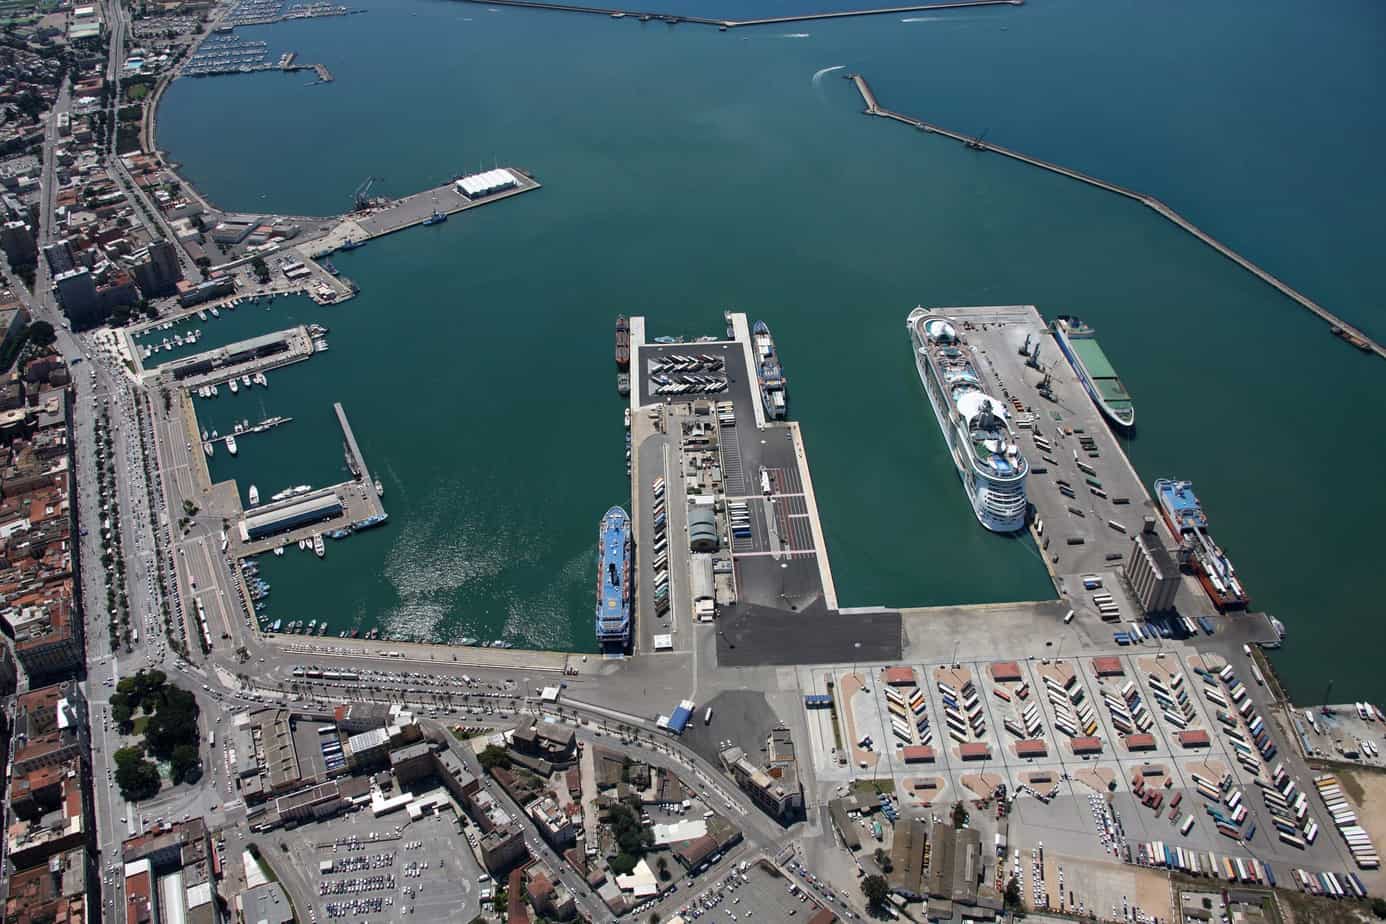 Una veduta del porto storico di Cagliari. In evidenza, in basso, i moli Sabaudo e Rinascita che costituiscono il terminal passeggeri